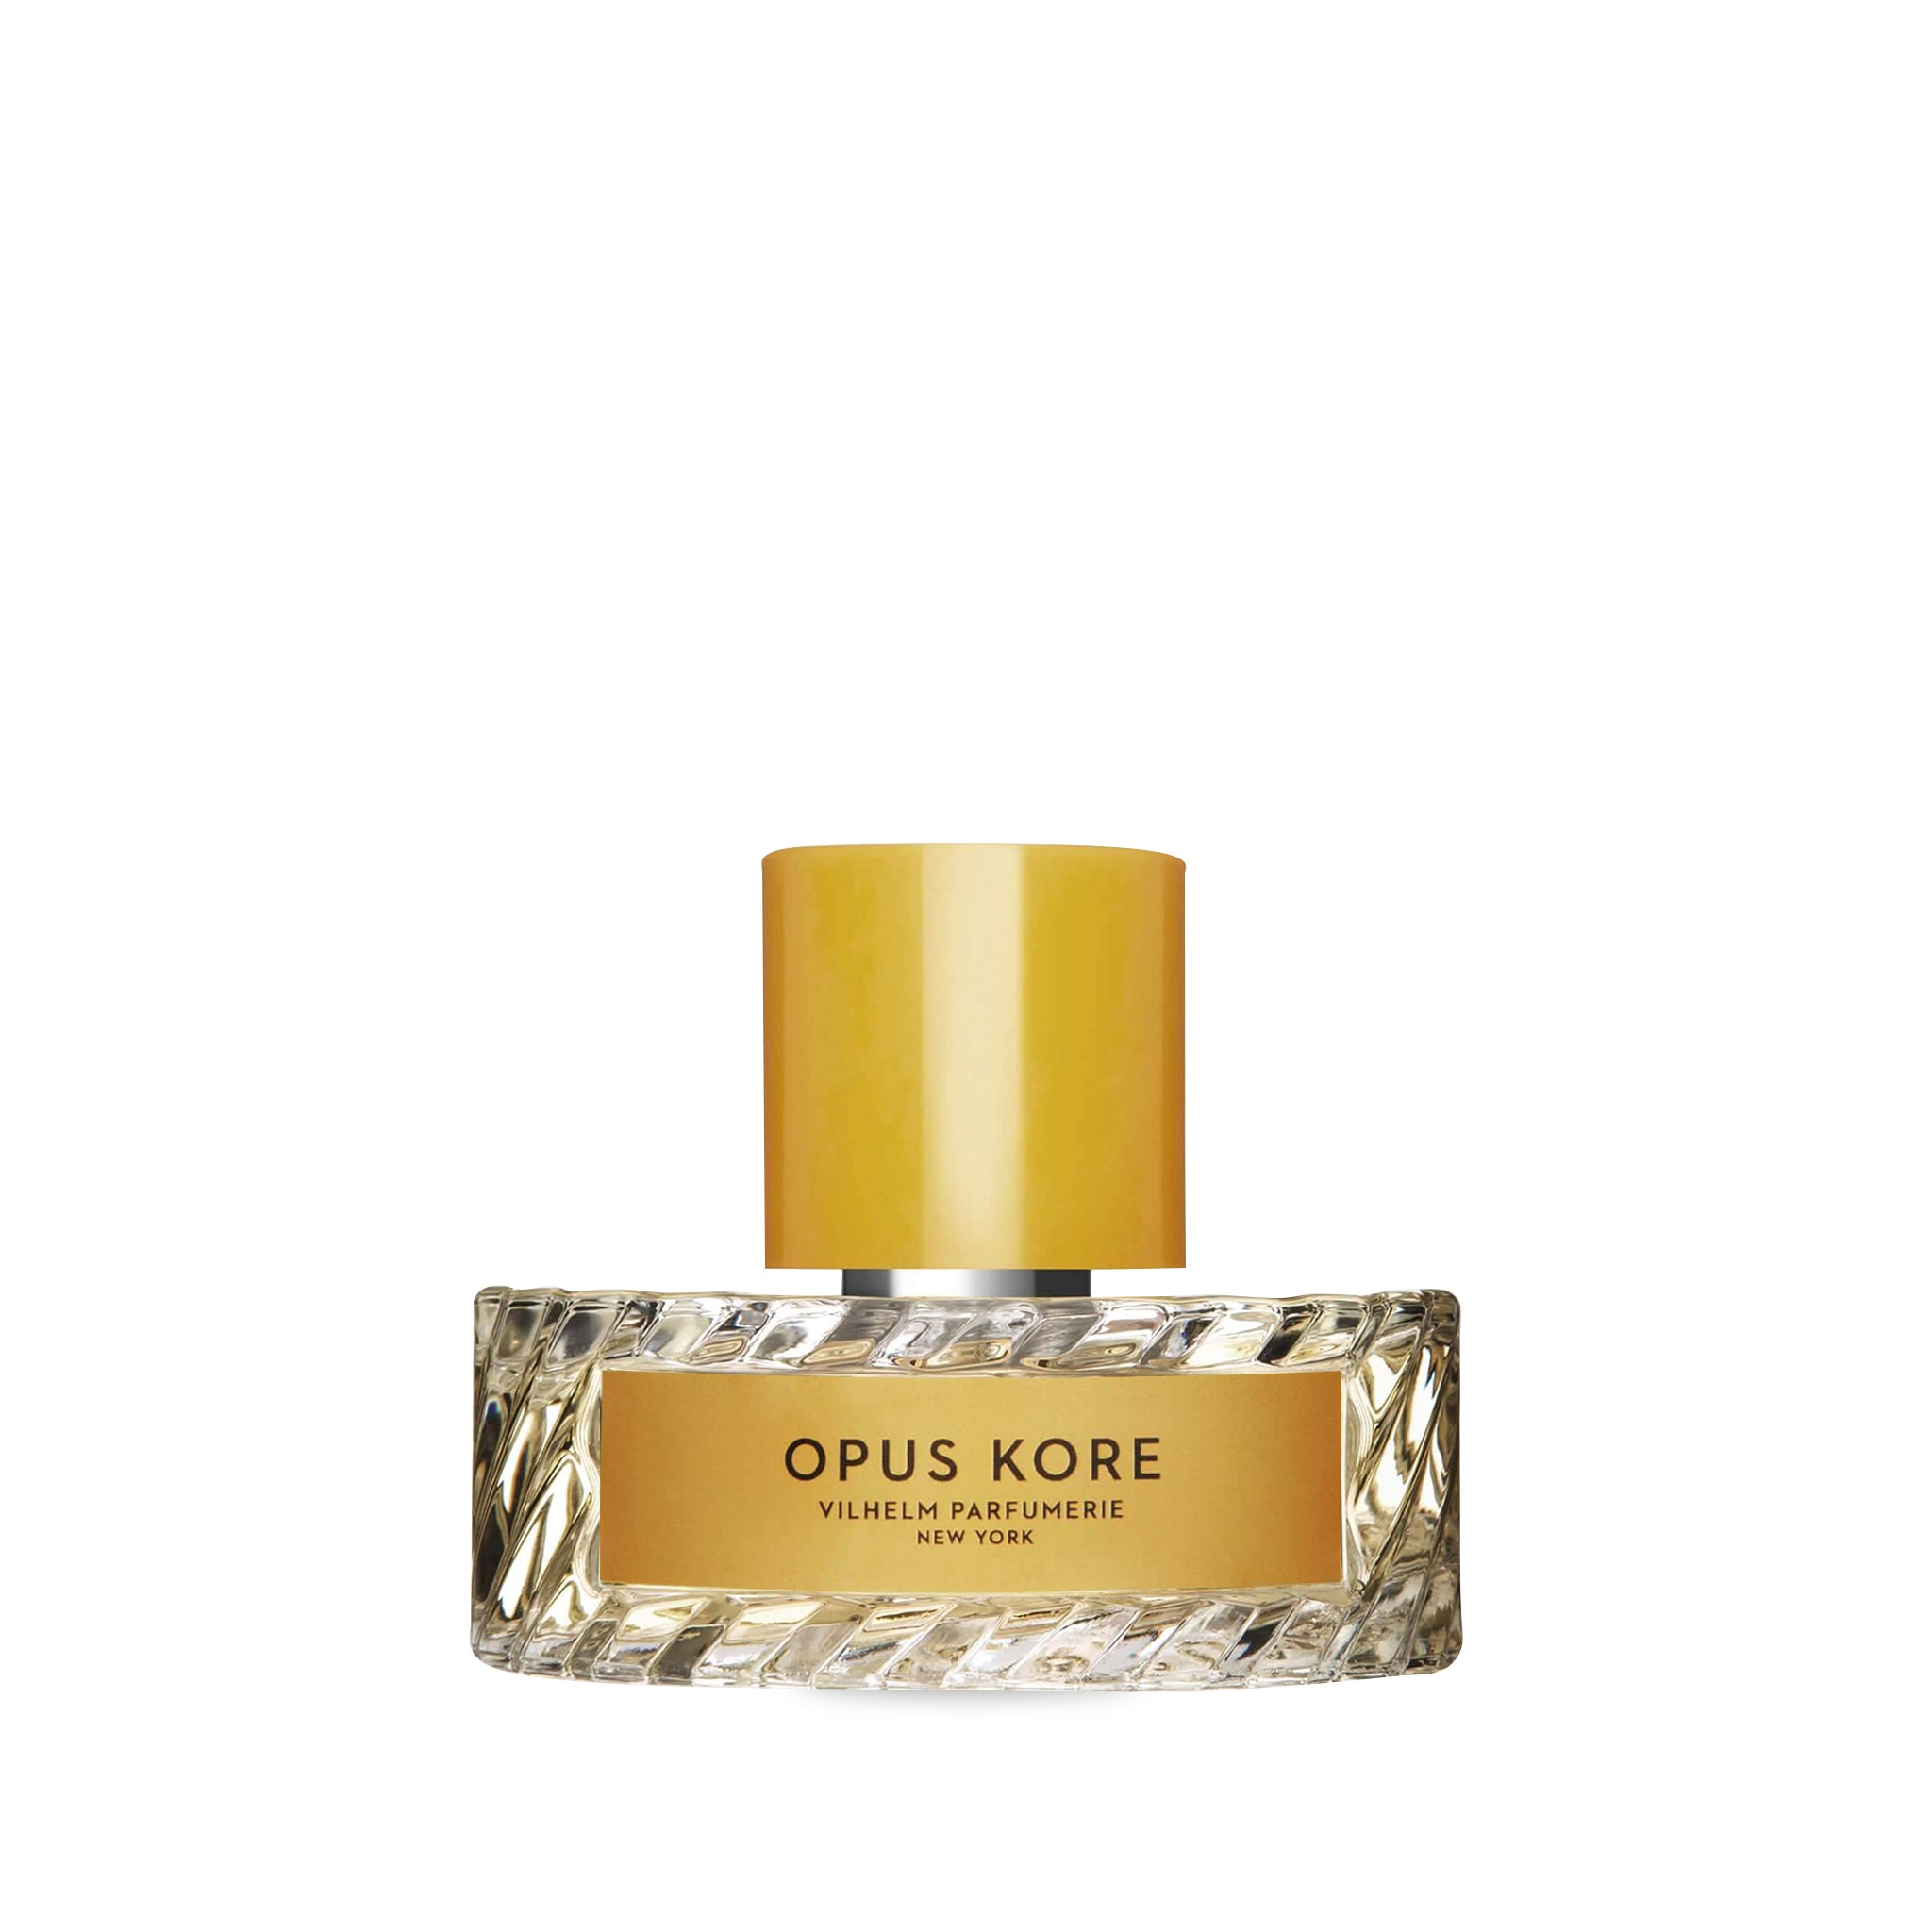 Opus Kore Vilhelm Parfumerie